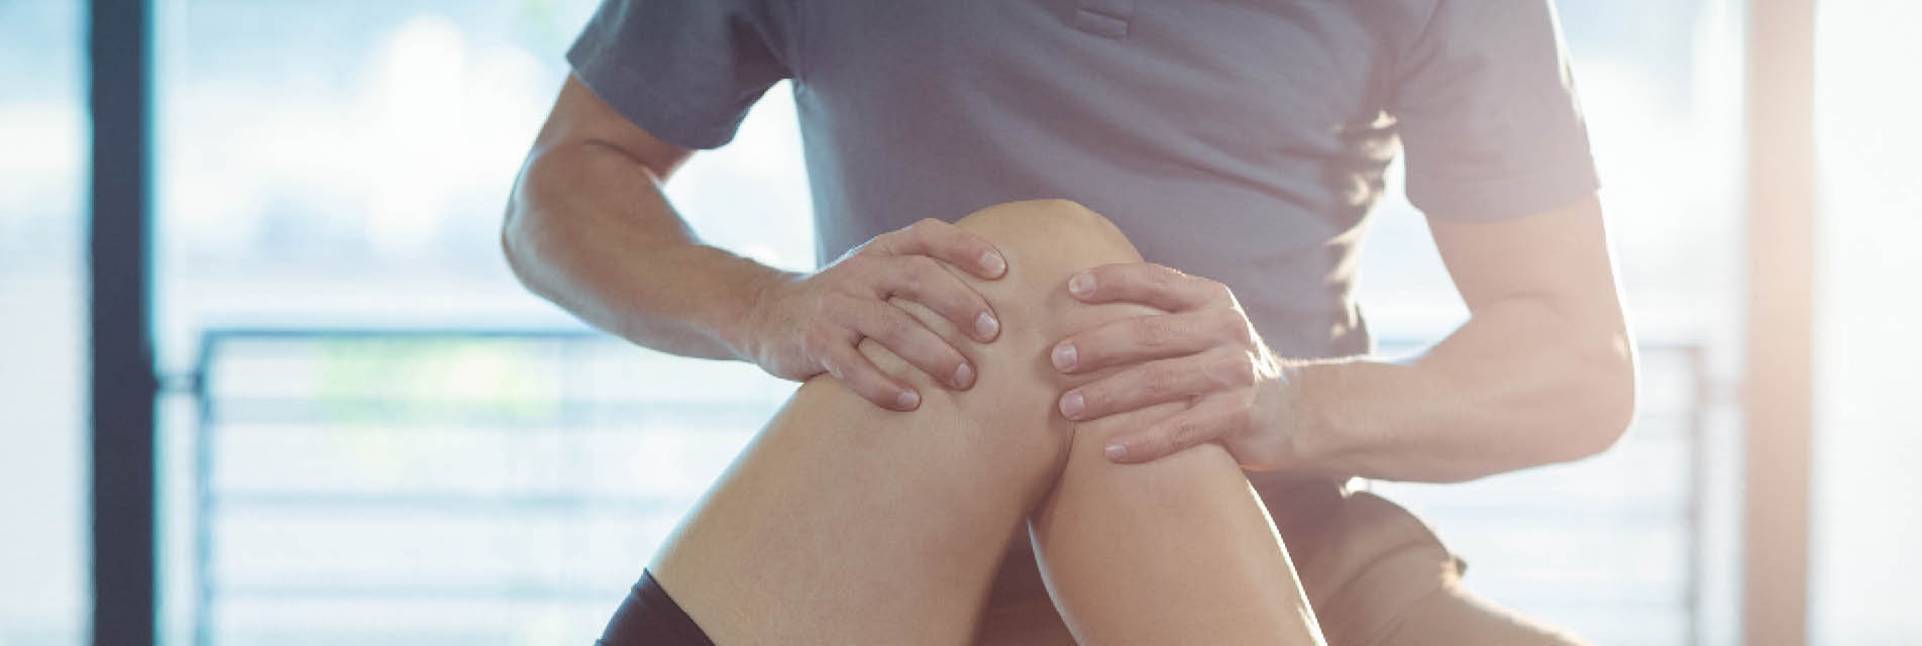 Dolor de rodilla: causas y tratamiento